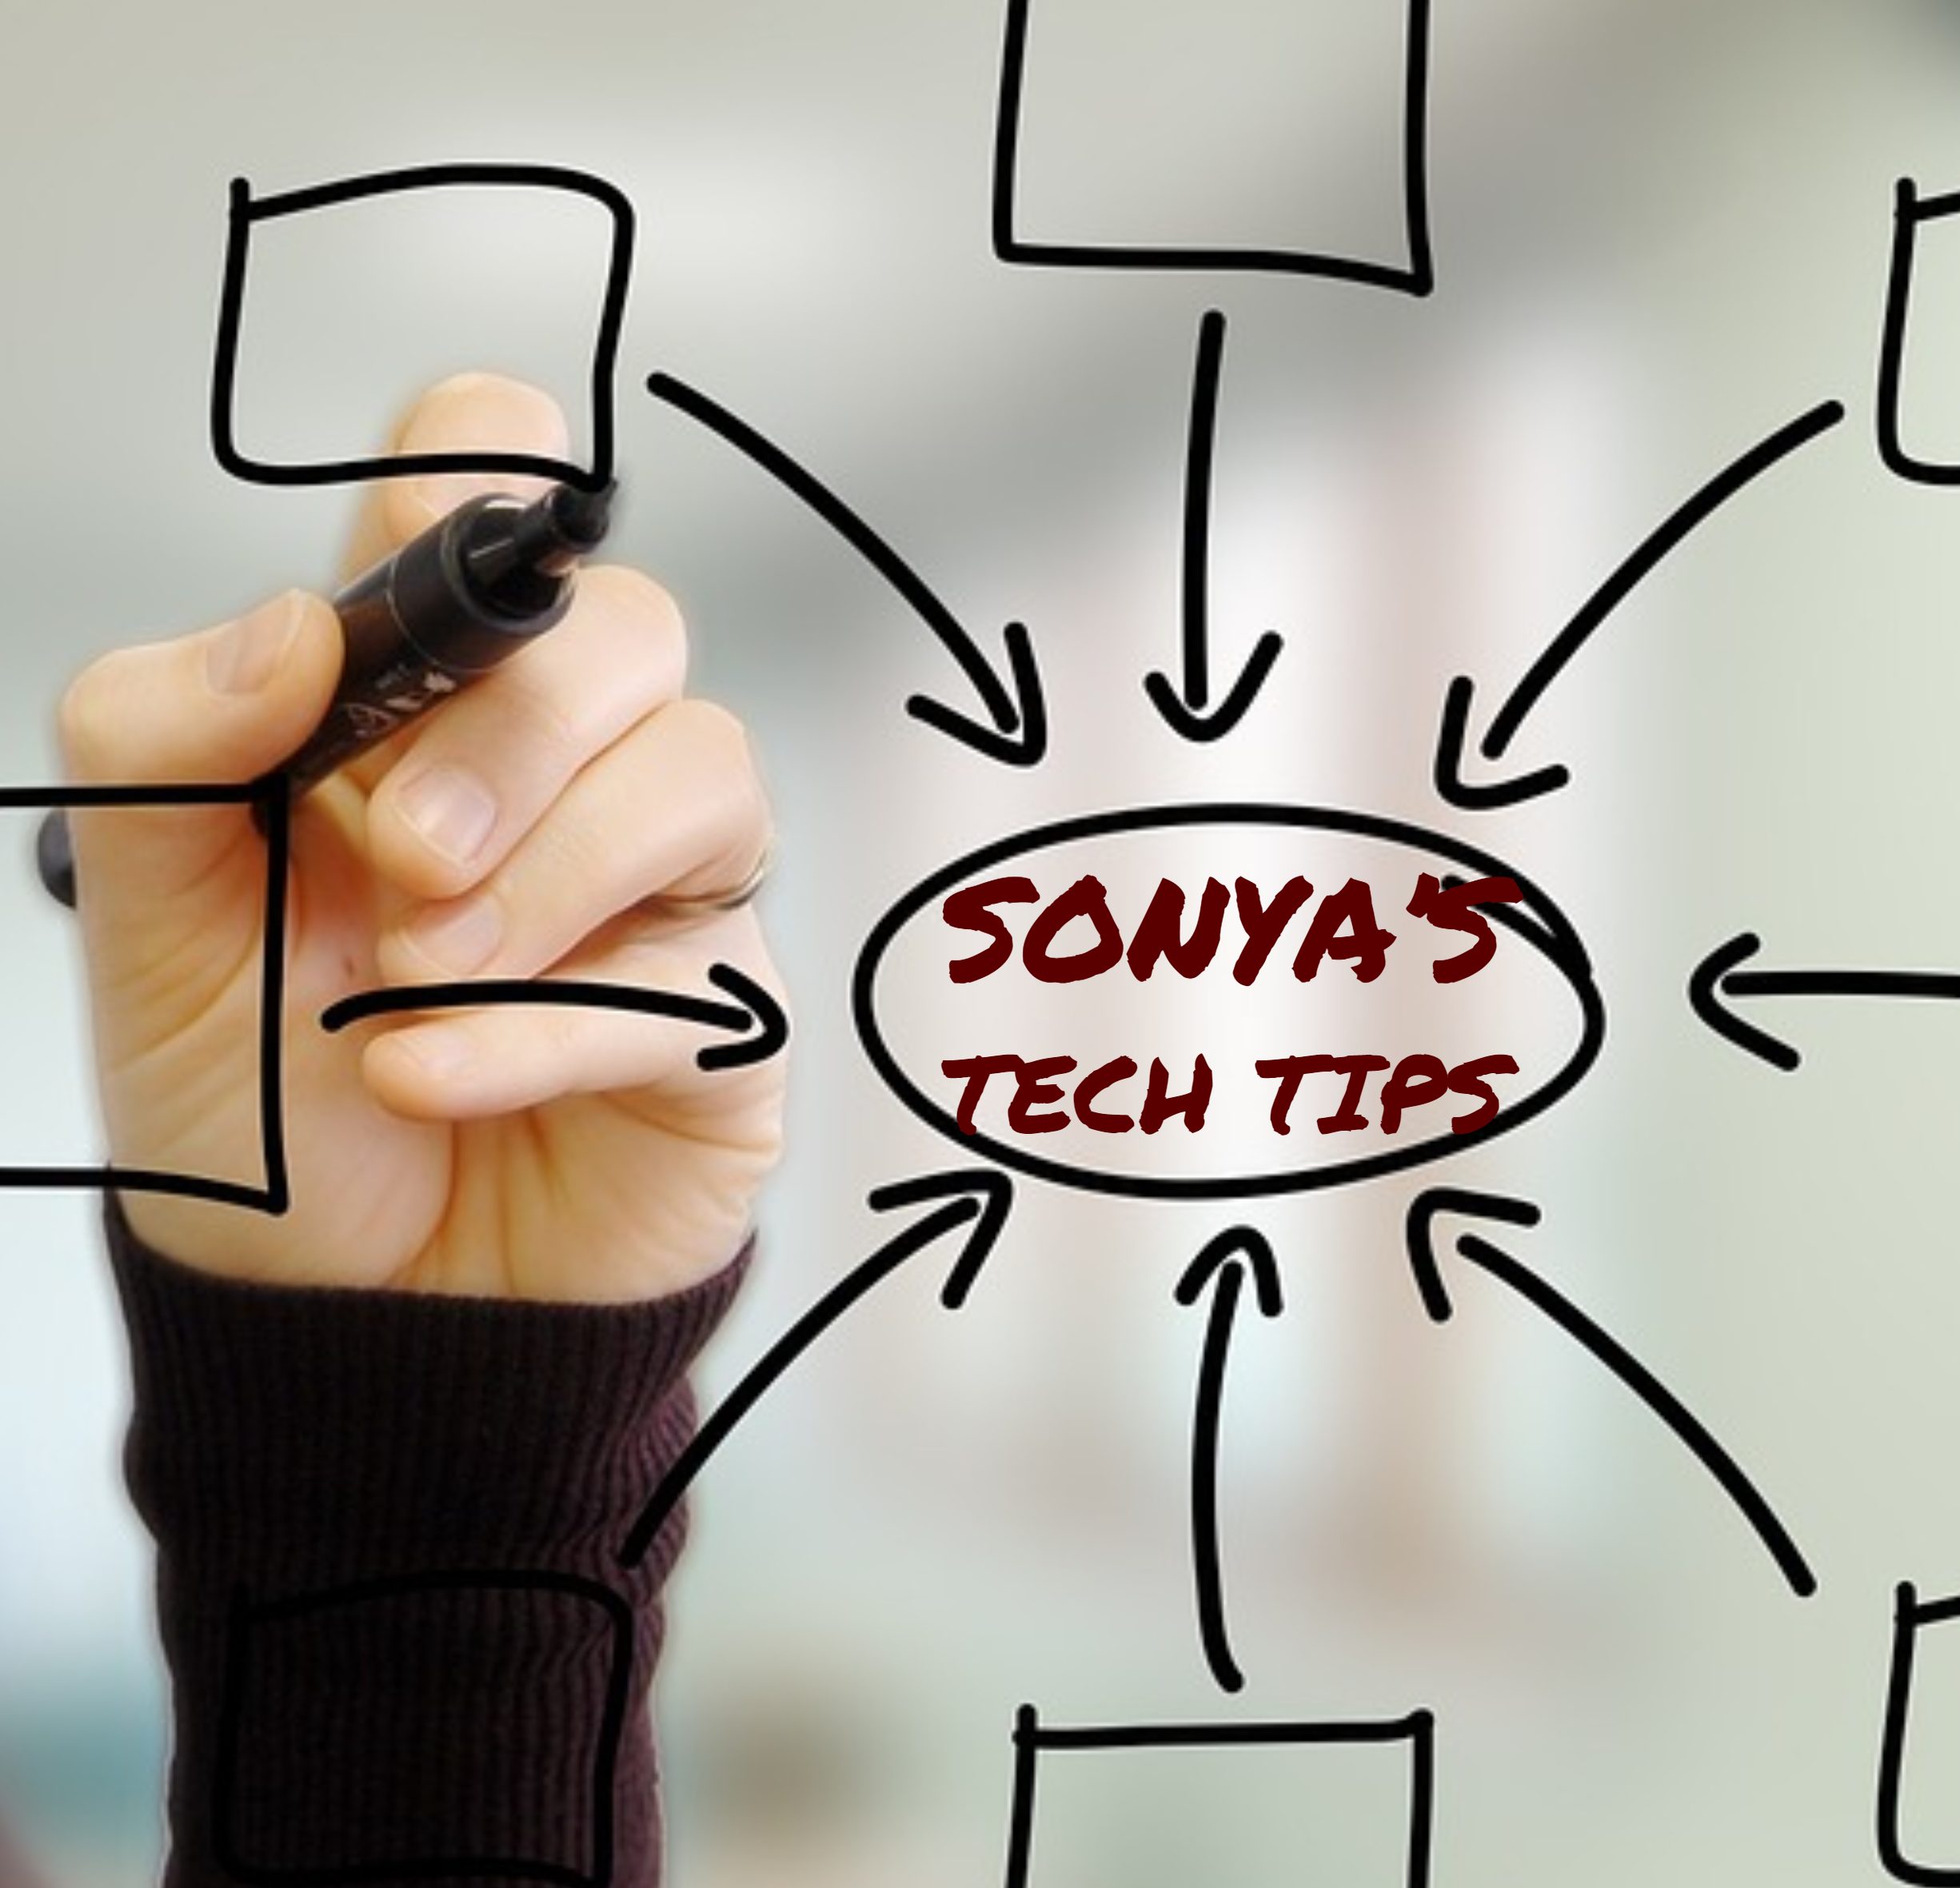 sonyas tech tips e1548192189883 Sonyas Tech Tip ~ Office Shortcuts